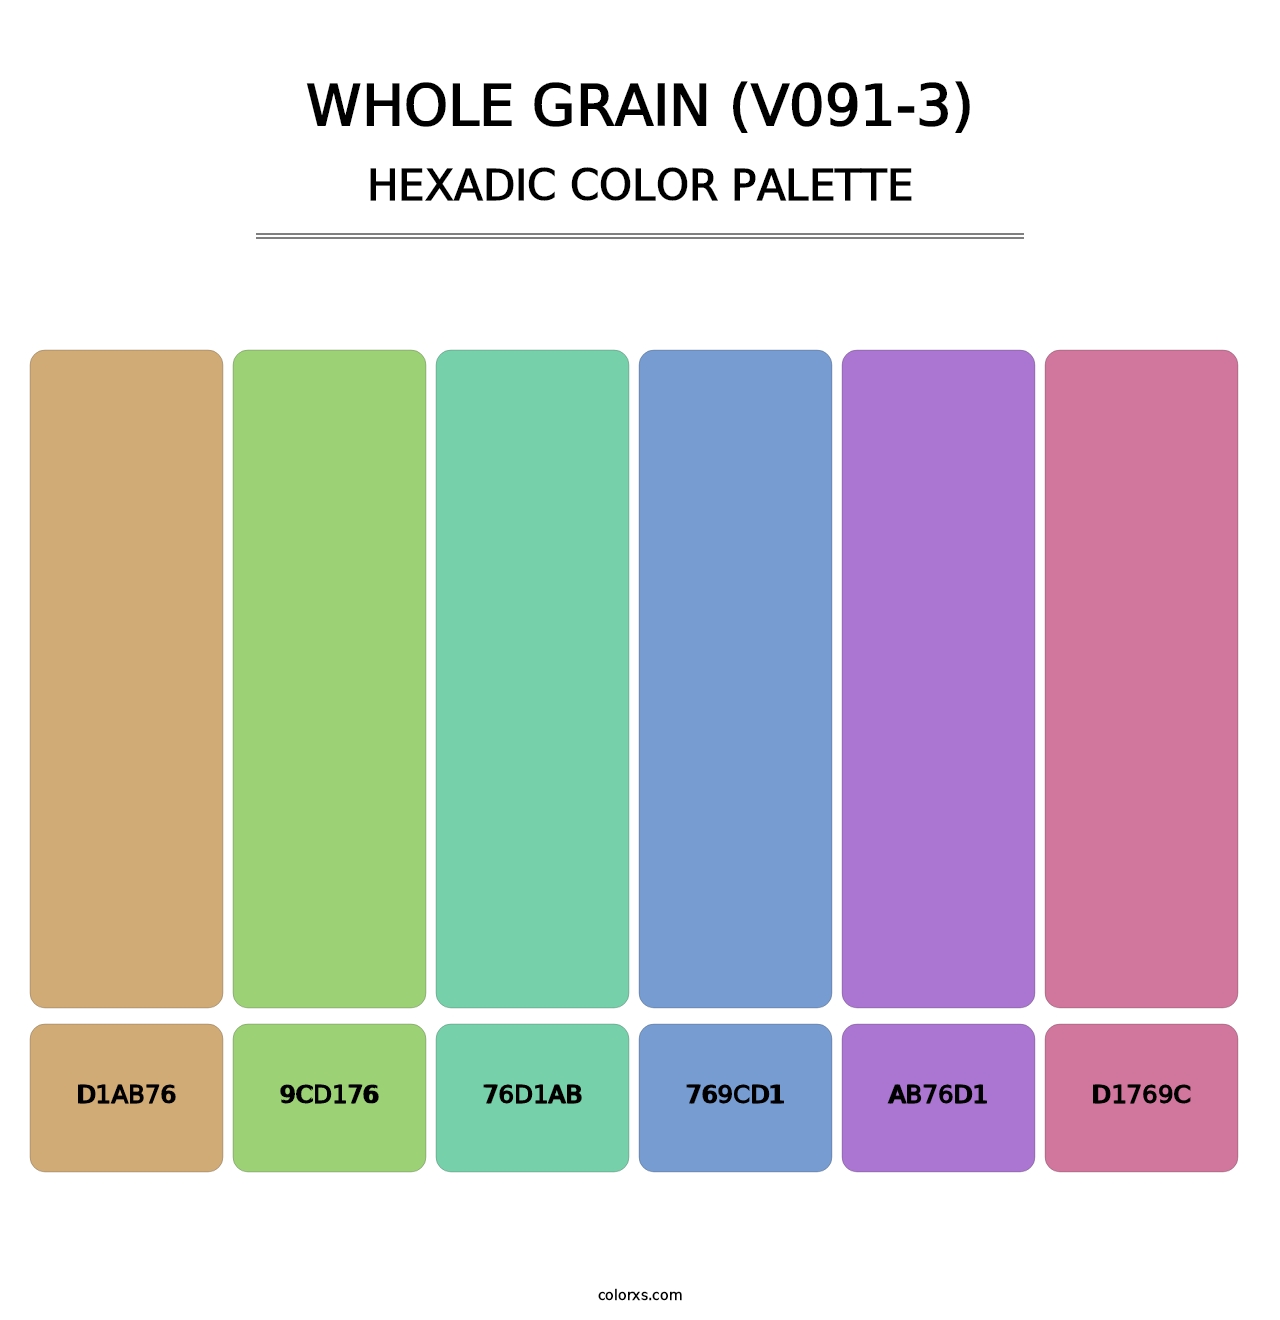 Whole Grain (V091-3) - Hexadic Color Palette